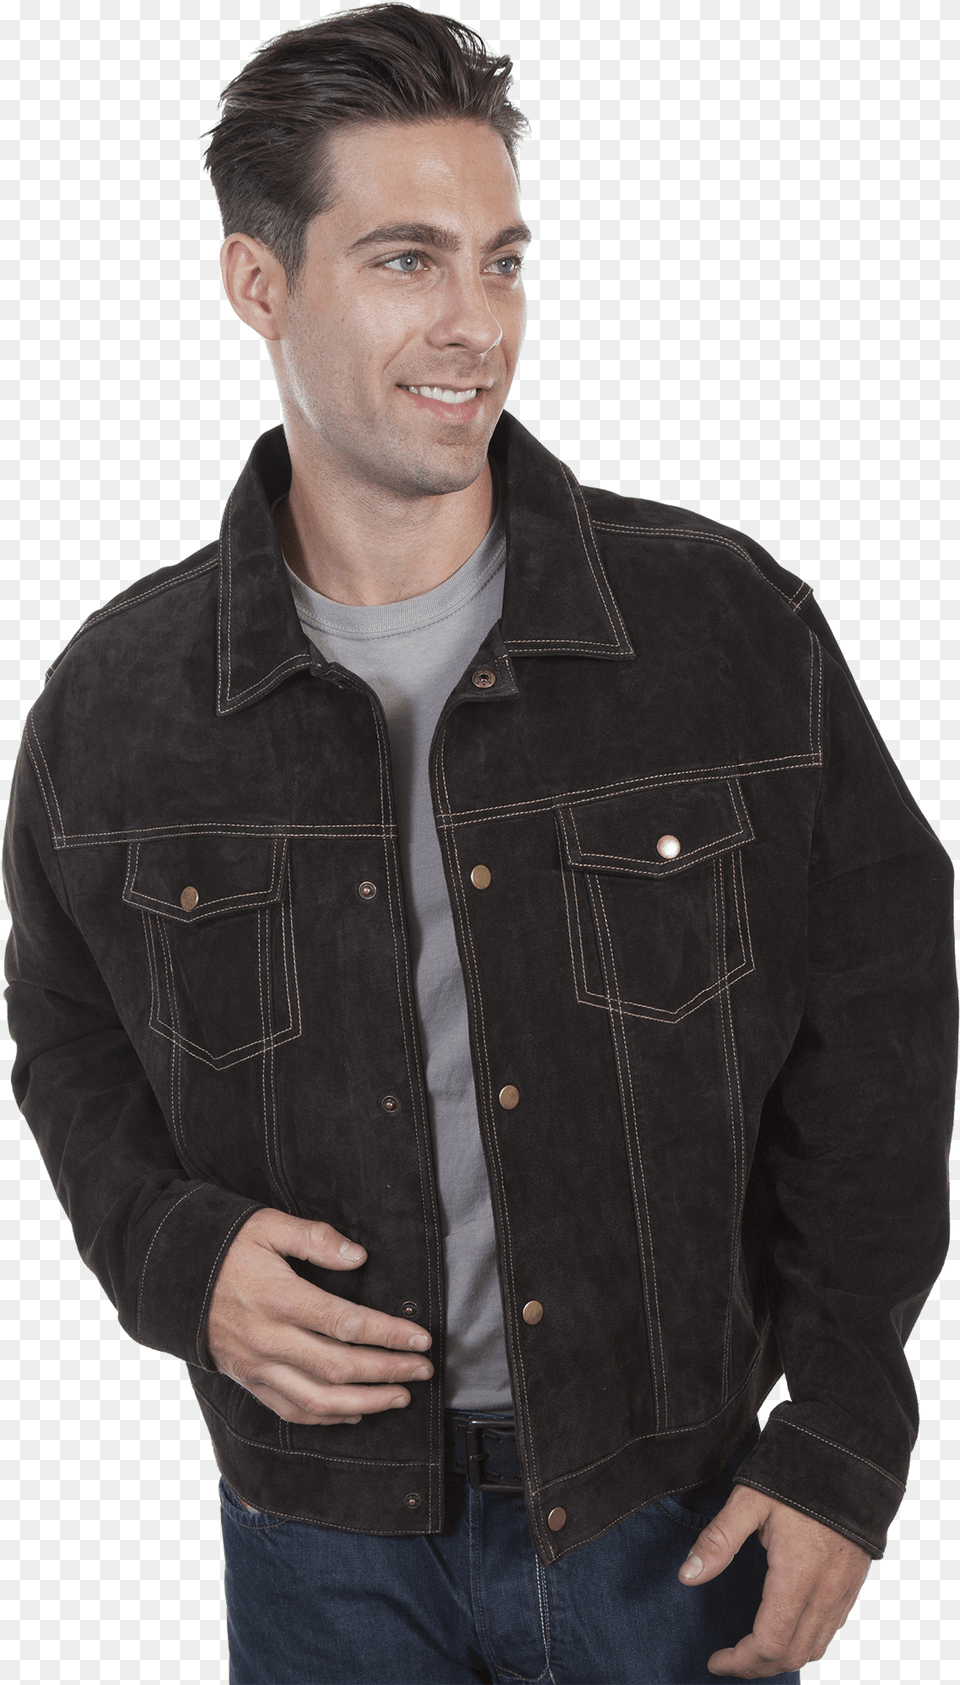 Jeans For Men, Vest, Jacket, Coat, Clothing Free Transparent Png